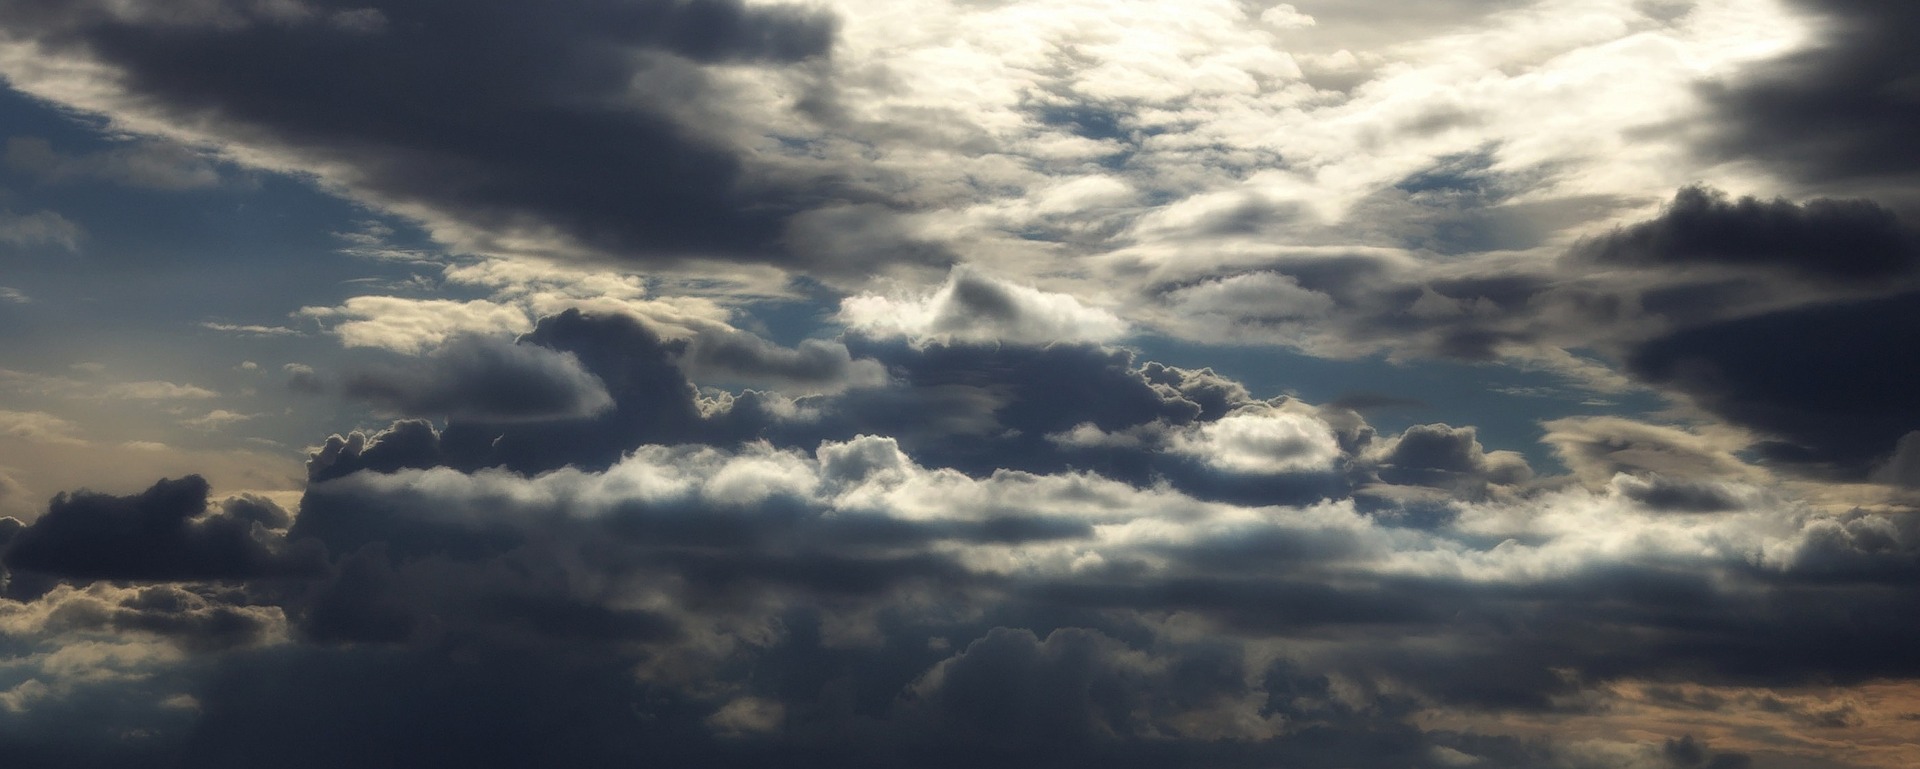 30 января астраханцев ждет переменная облачность